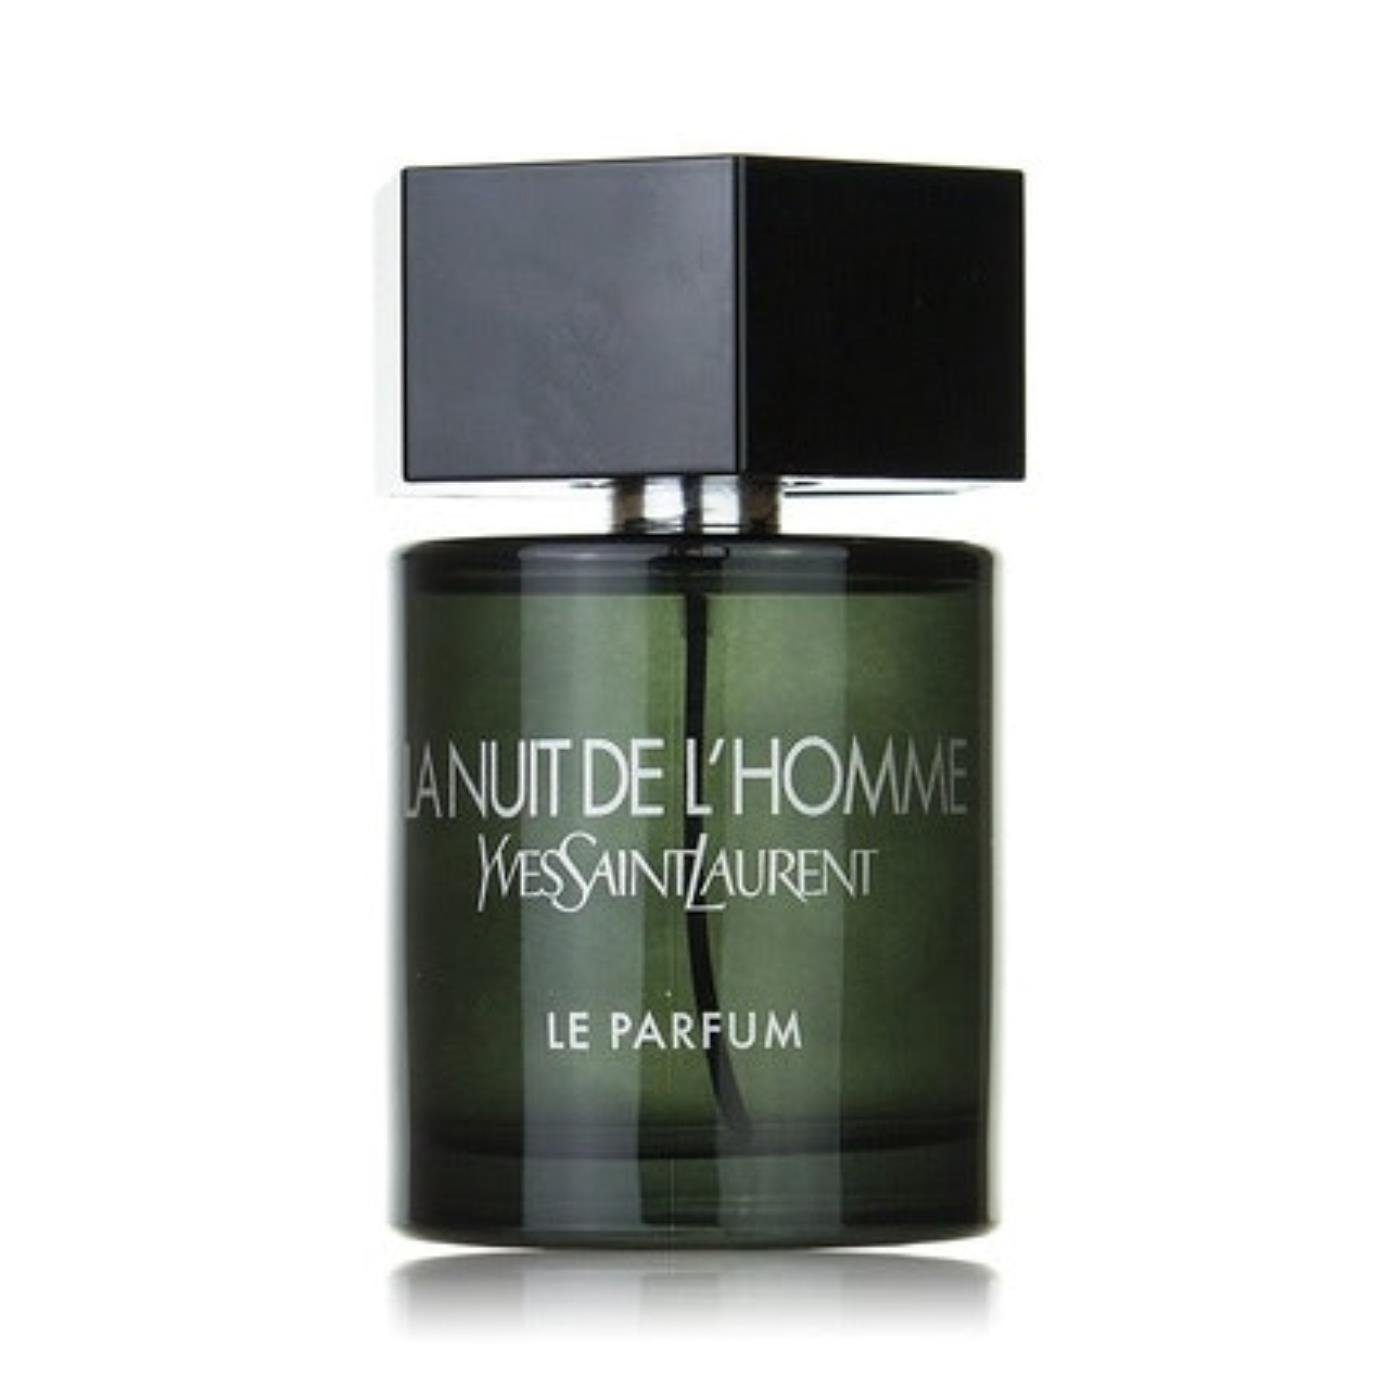 Parfum L'Homme YVES Saint La Le de LAURENT SAINT Laurent Parfum de Eau Yves Nuit